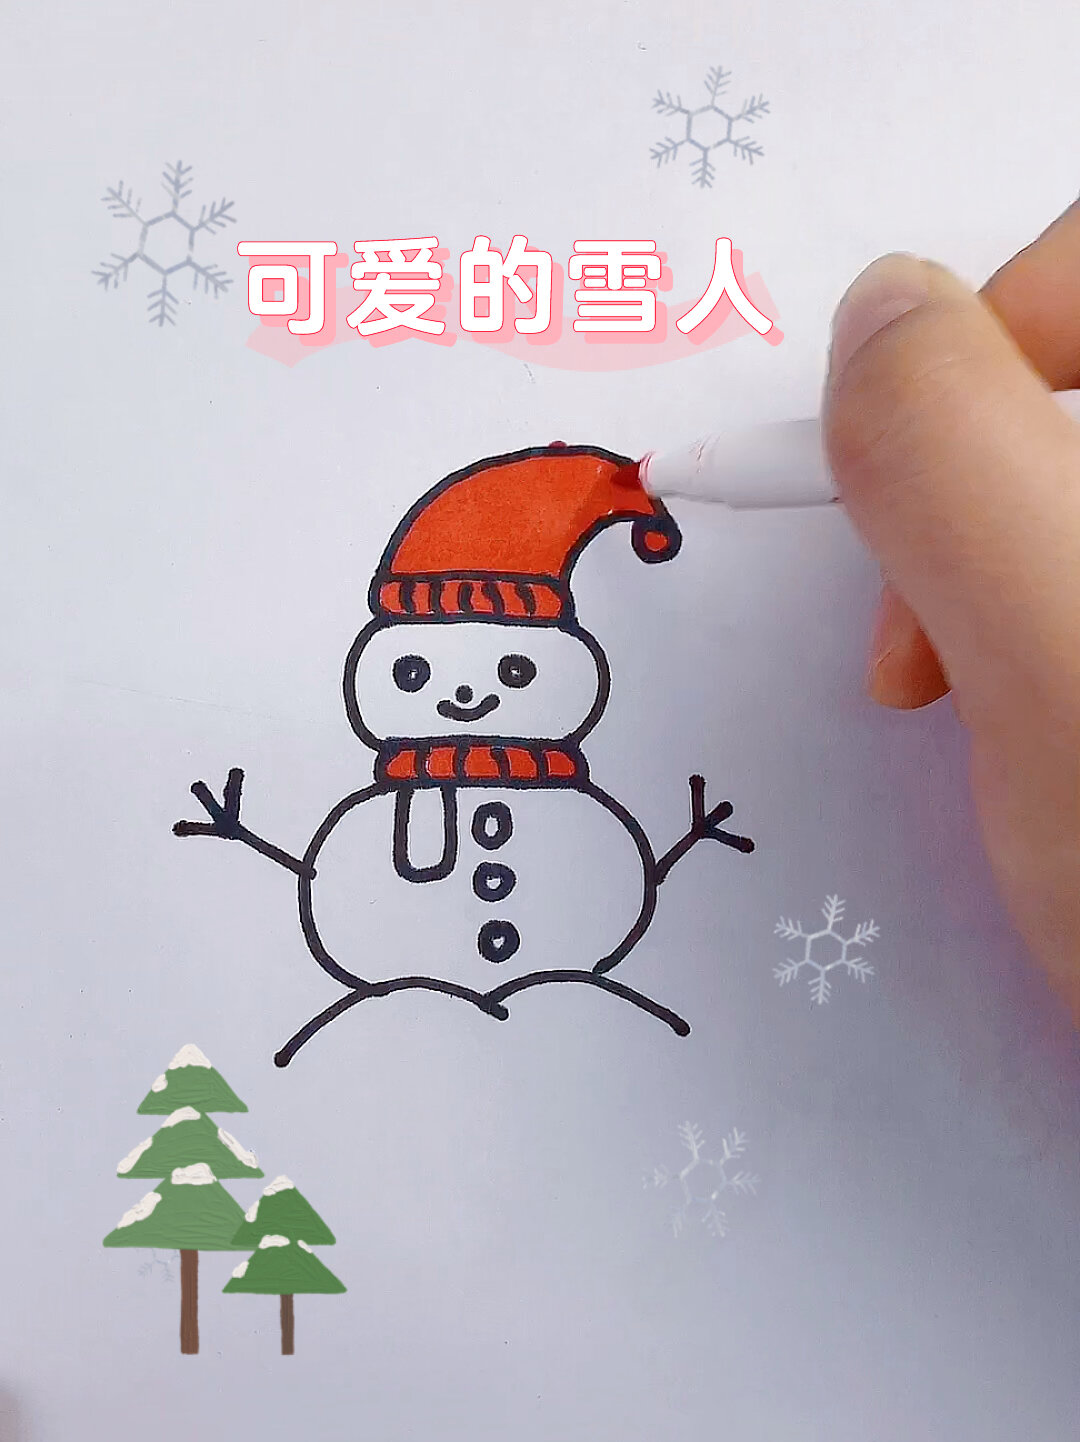 冬天的雪人图画简笔画图片